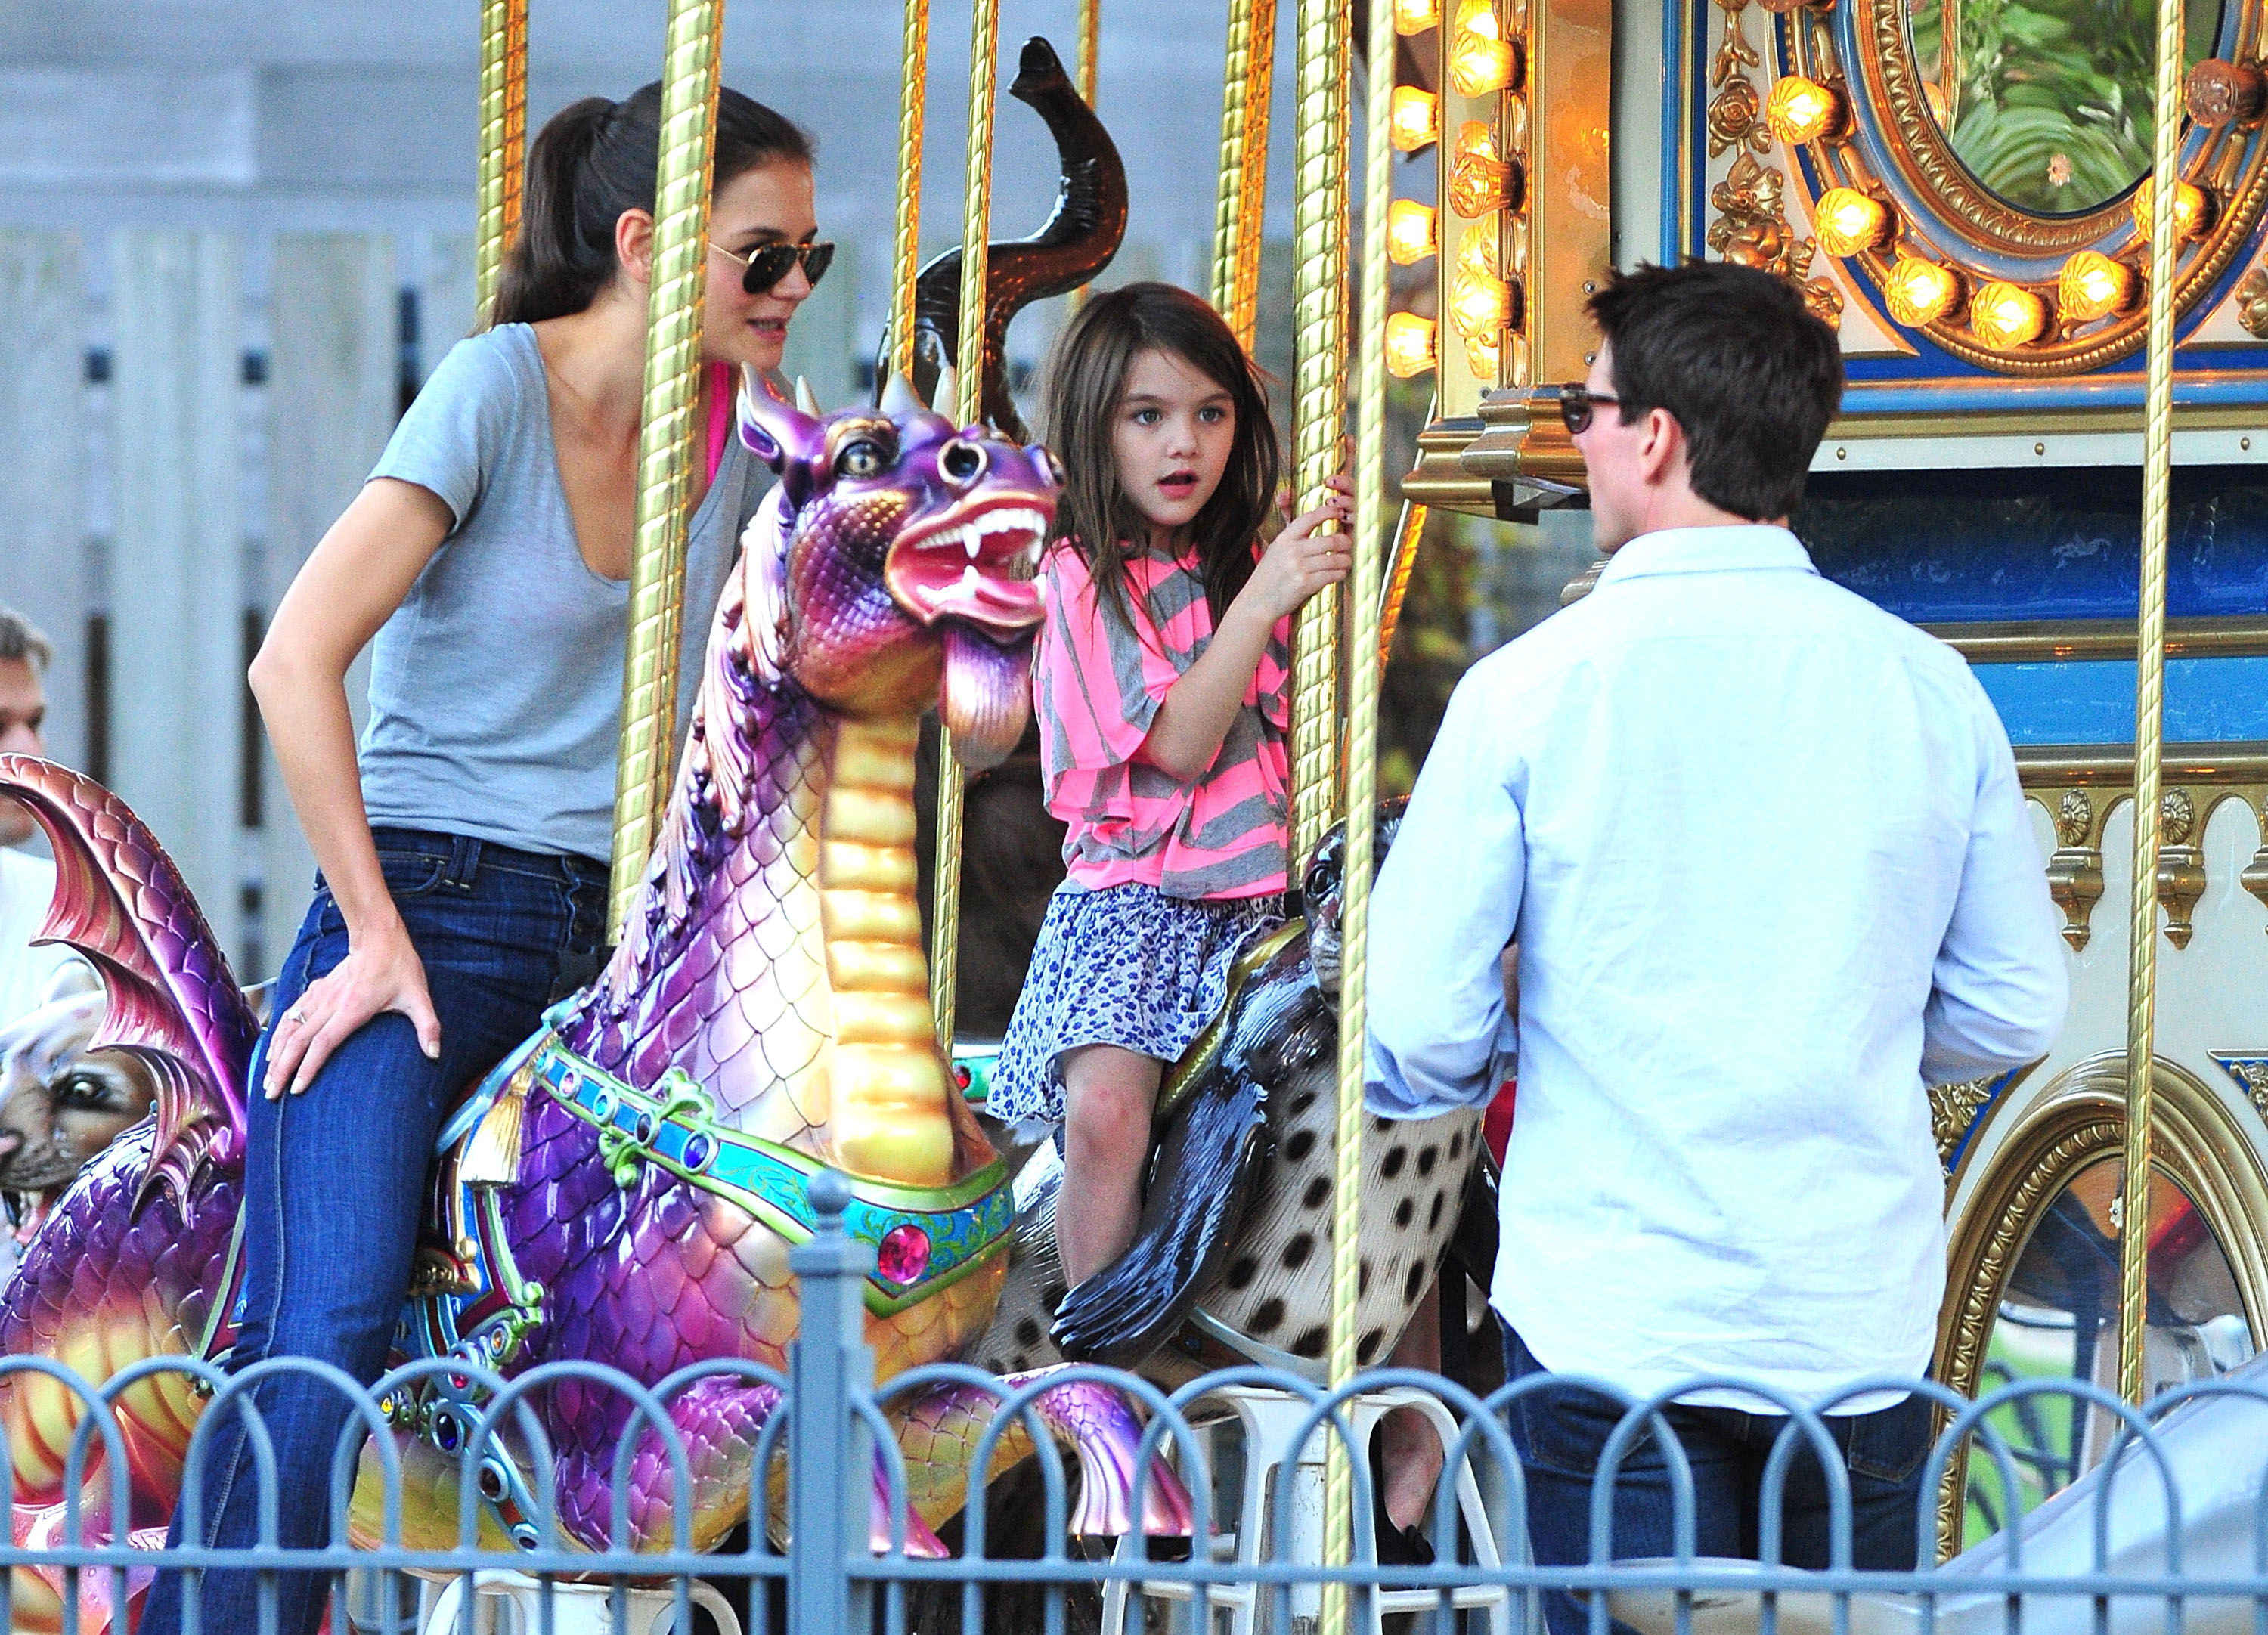 Katie Holmes, Suri Cruise et Tom Cruise visitent le carrousel de Schenley Plaza à Pittsburgh, en Pennsylvanie, le 8 octobre 2011. | Source : Getty Images